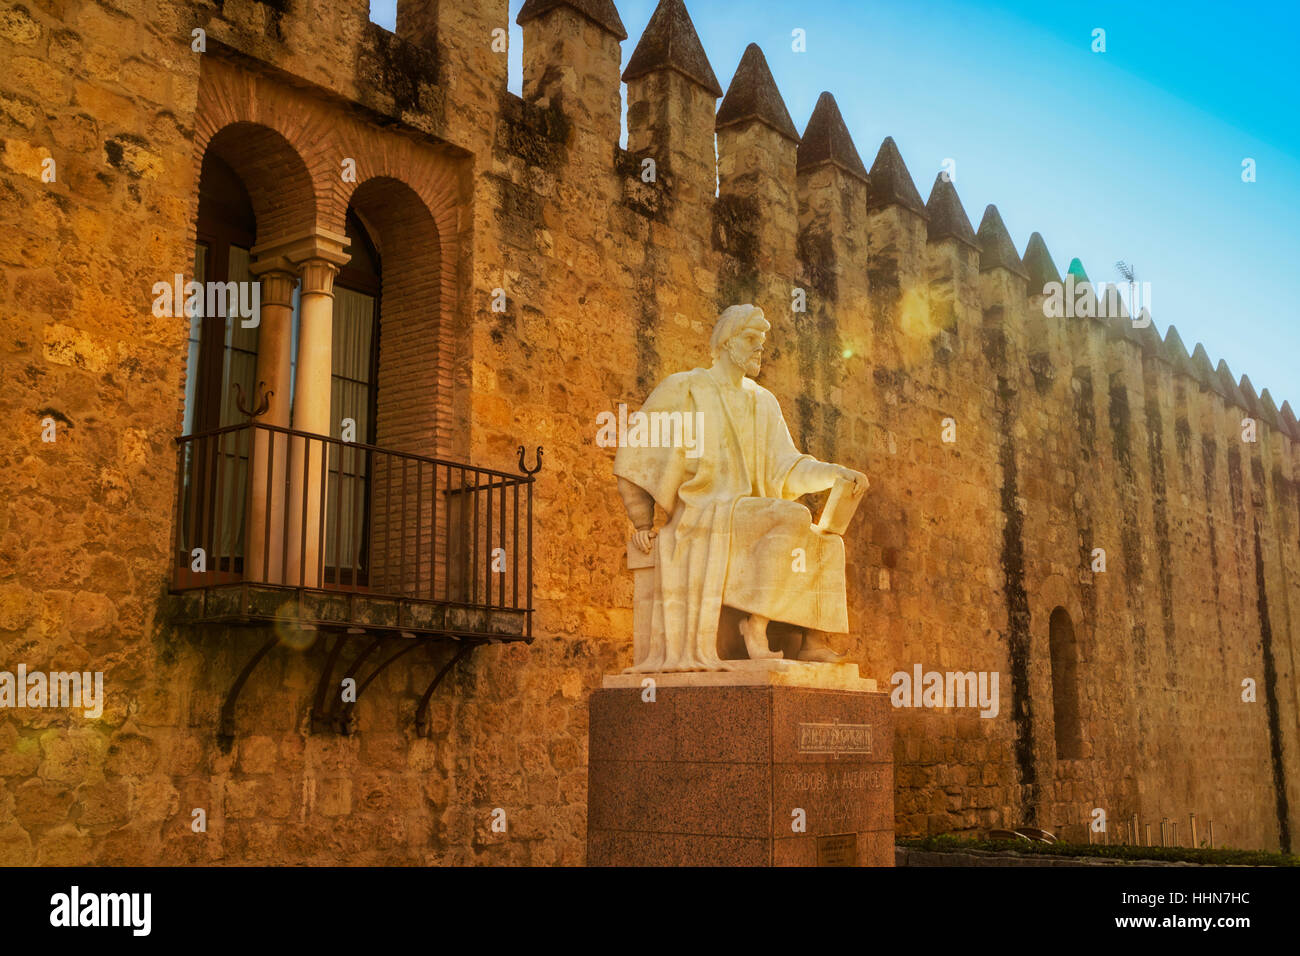 Cordoba, Cordoue, Andalousie, province du sud de l'Espagne. Statue d'Averroès, grand penseur musulman né à Cordoue, mort 1126 Marrakech, Maroc, 1198. Ville wa Banque D'Images